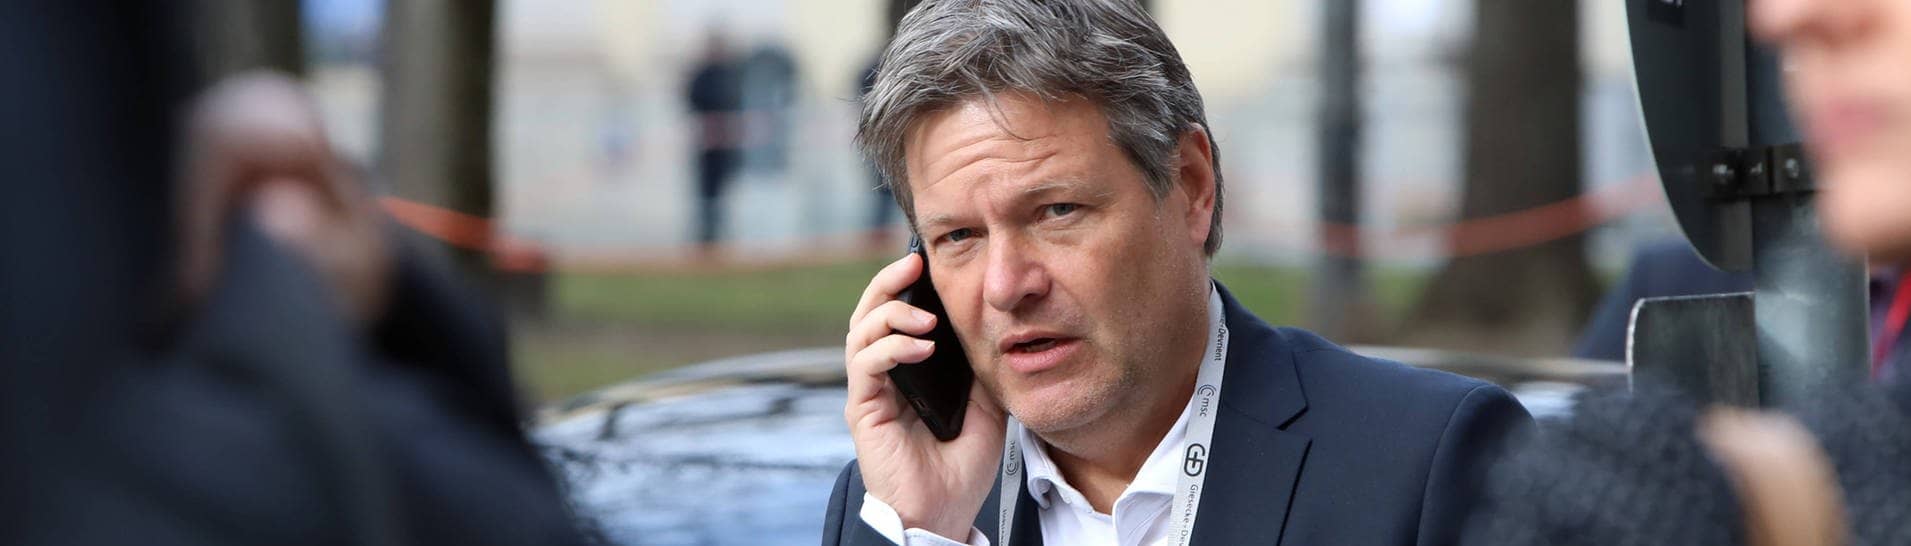 Bundeswirtschaftsminister Robert Habeck (Grüne) telefoniert am Handy (Foto: IMAGO, IMAGO/Björn Trotzki)